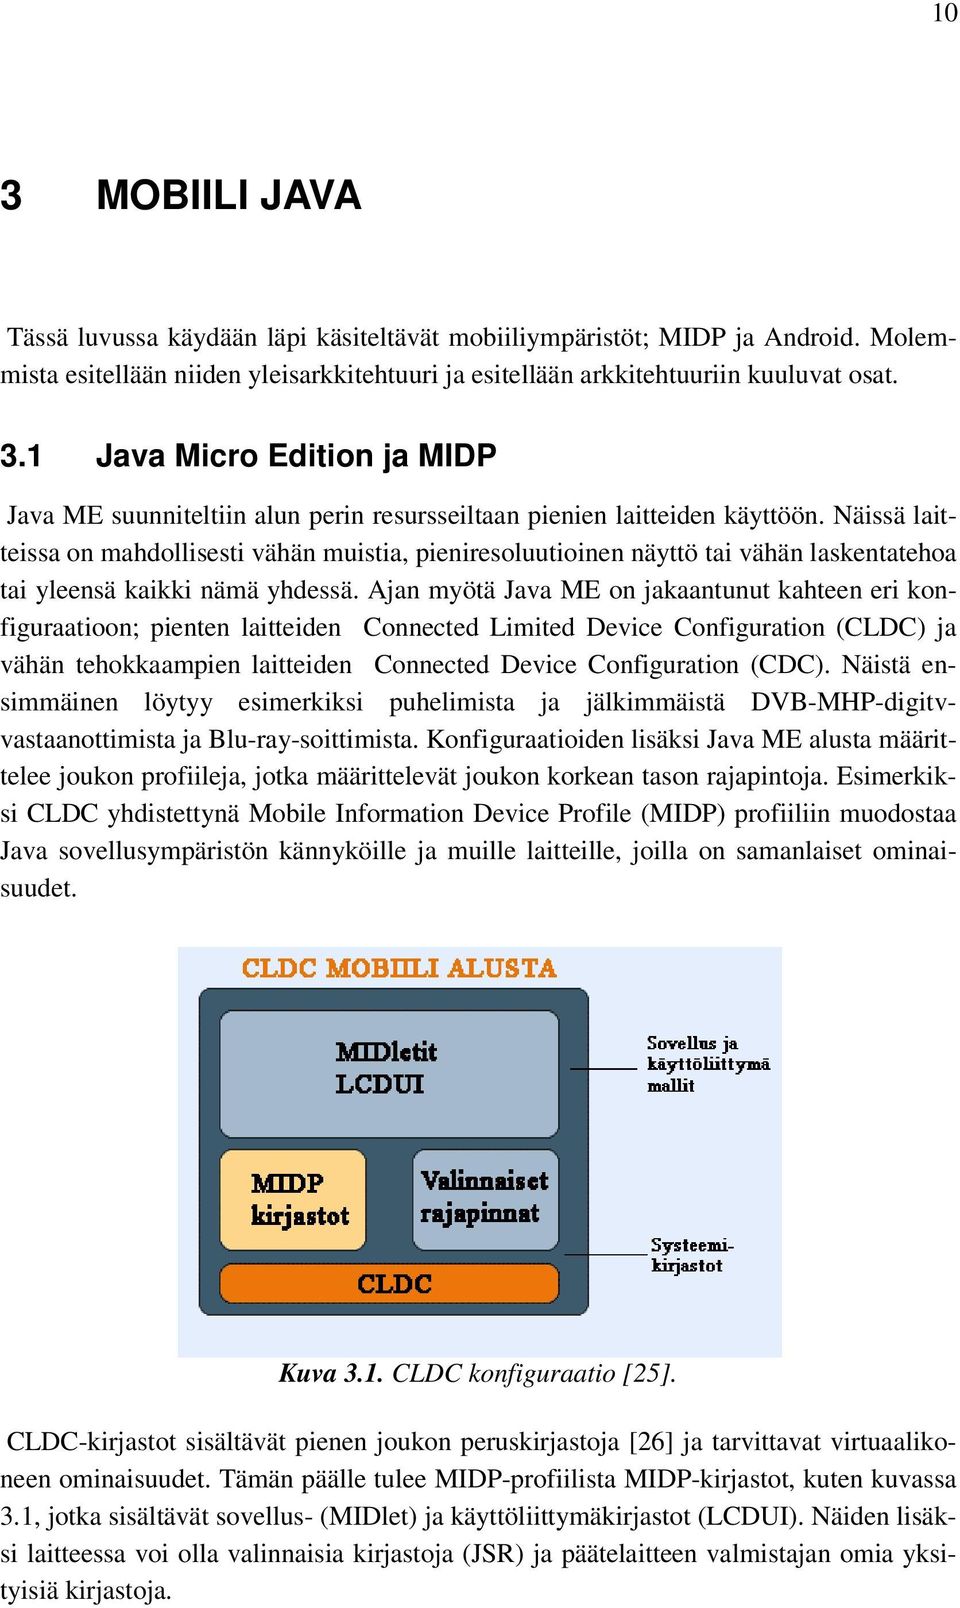 Ajan myötä Java ME on jakaantunut kahteen eri konfiguraatioon; pienten laitteiden Connected Limited Device Configuration (CLDC) ja vähän tehokkaampien laitteiden Connected Device Configuration (CDC).